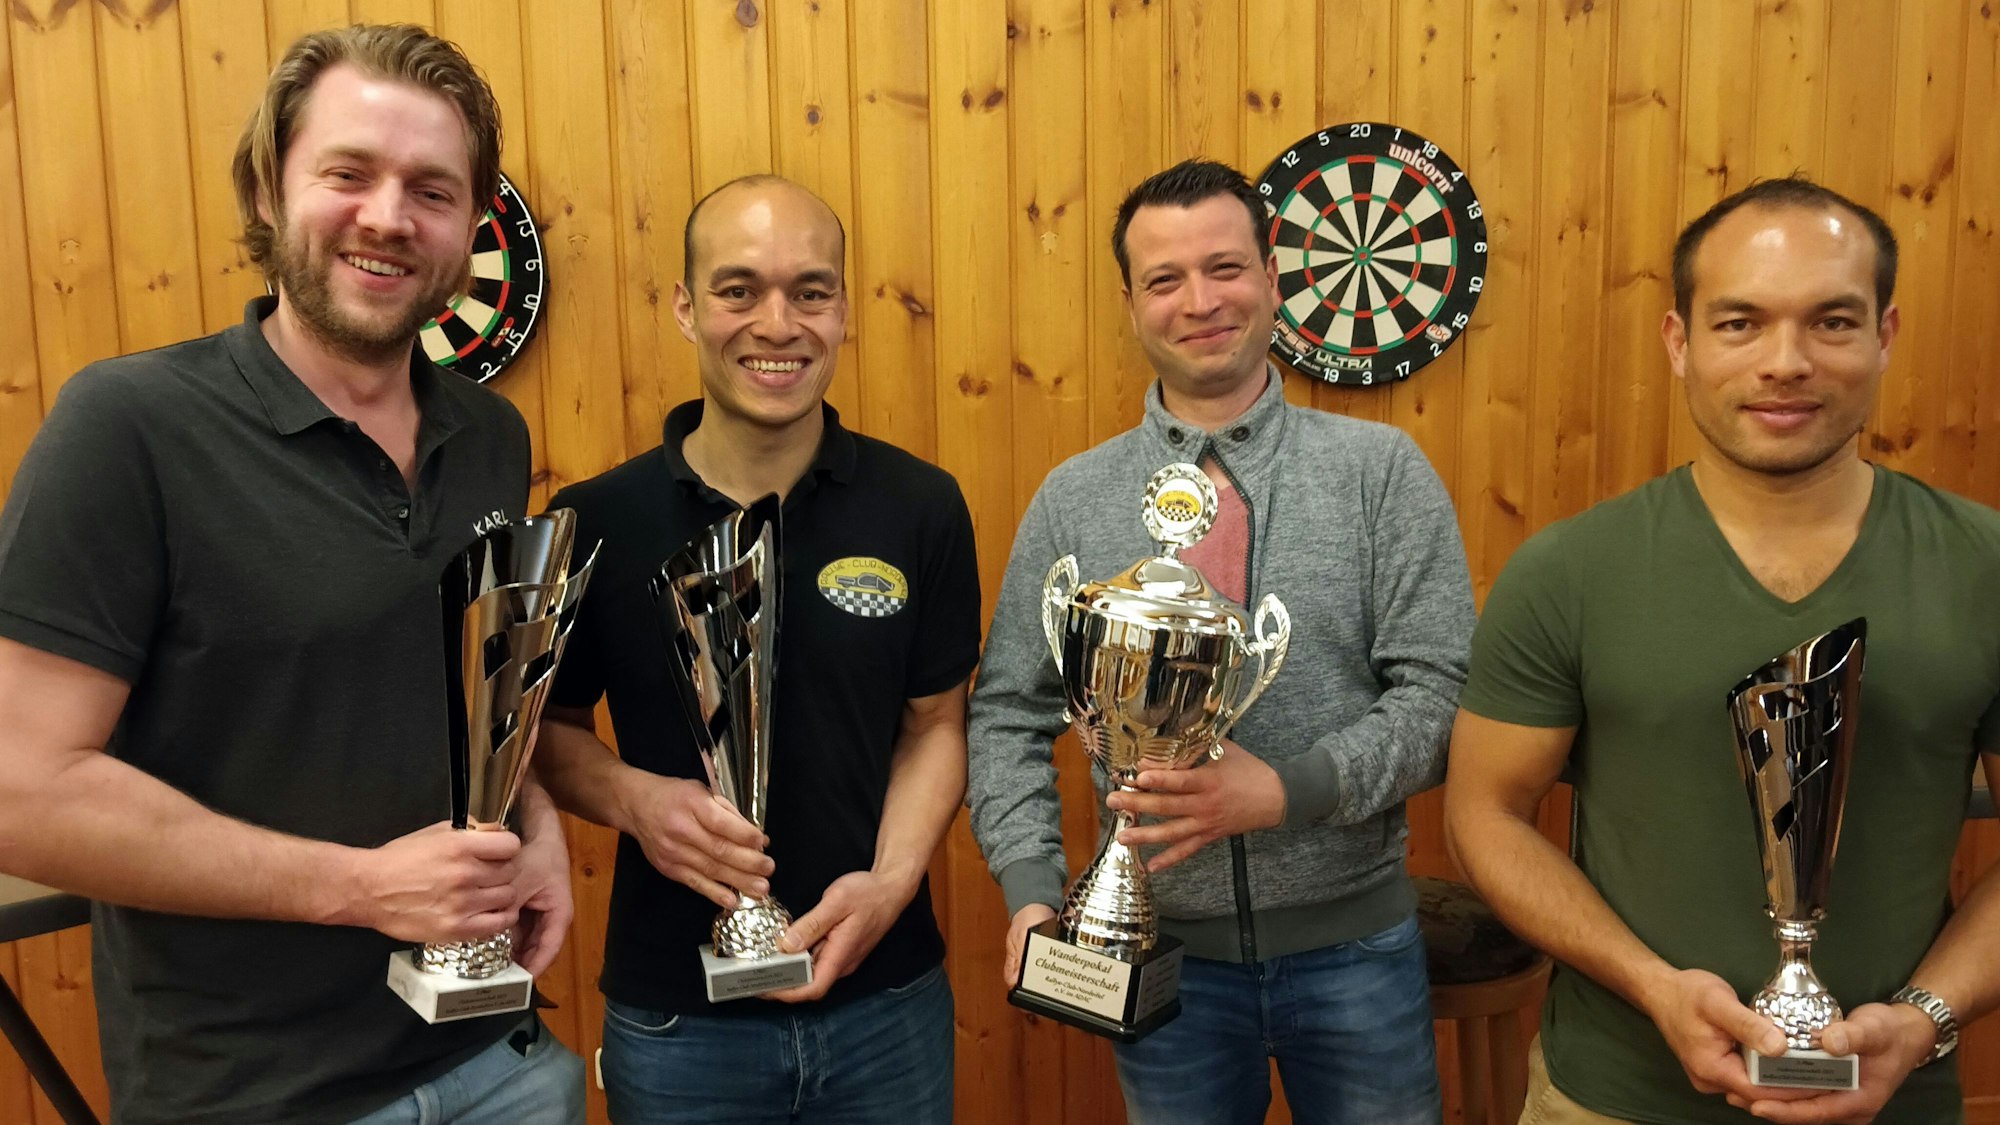 Fabian Schumacher (v.l.), Michael Klein, Andreas Nocker und Daniel Klein stehen vor einer Holzwand mit einem Dartboard und halten verschiedene Siegerpokale in den Händen.